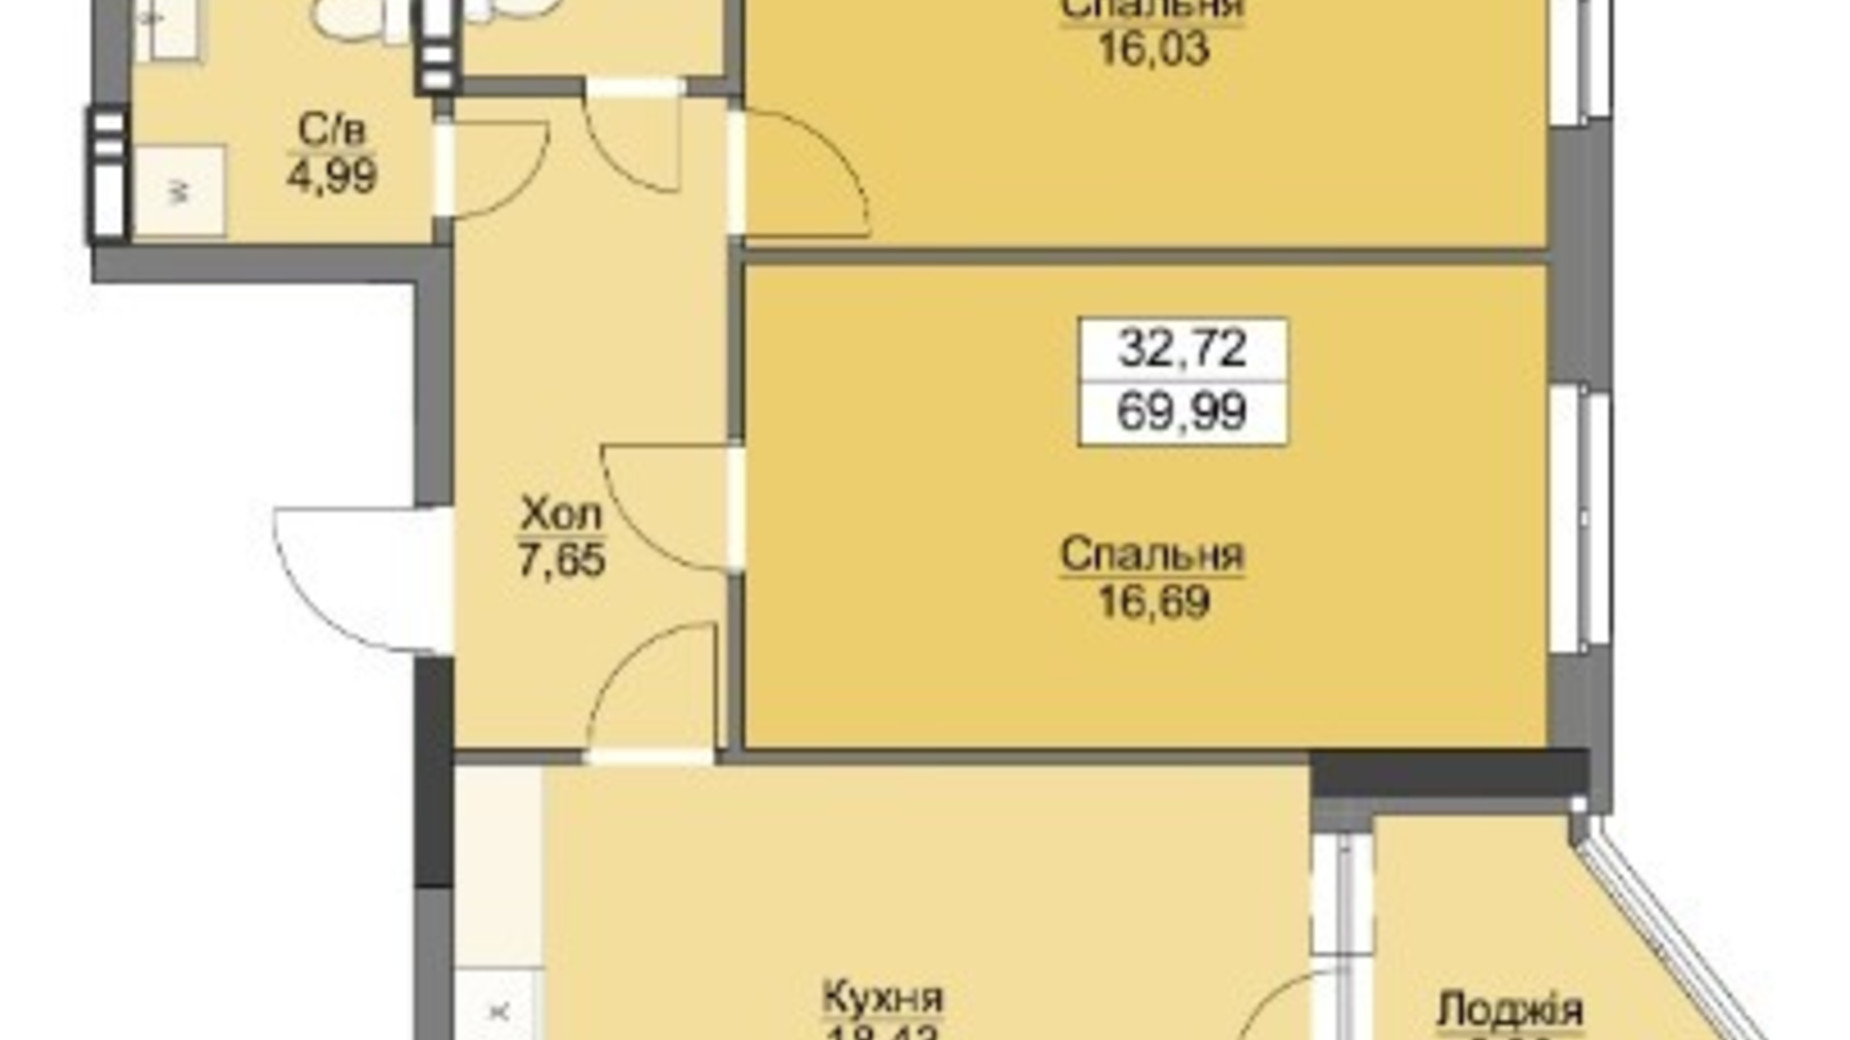 Планировка 2-комнатной квартиры в ЖК Vyshgorod Plaza 69.99 м², фото 223710